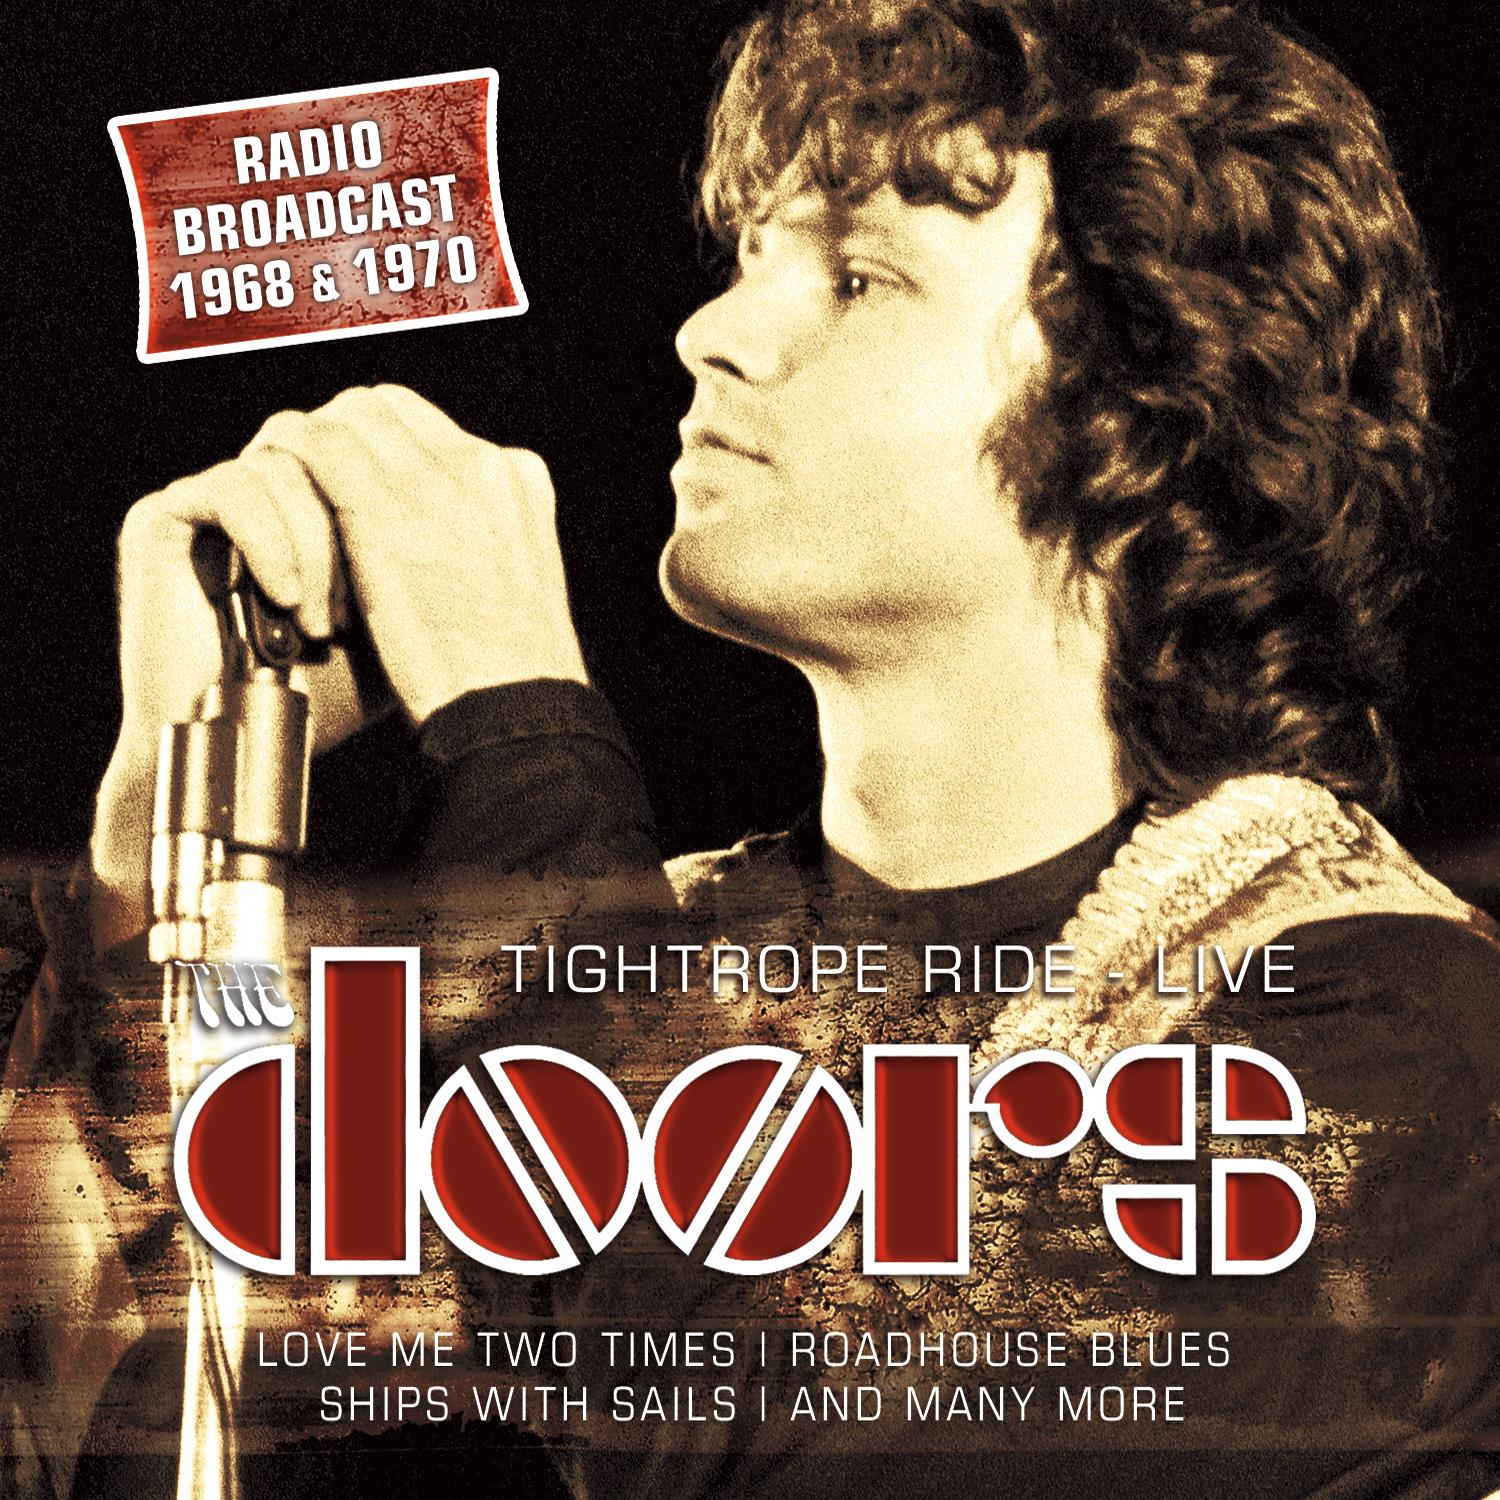 The Doors The Doors Full Album Torrent